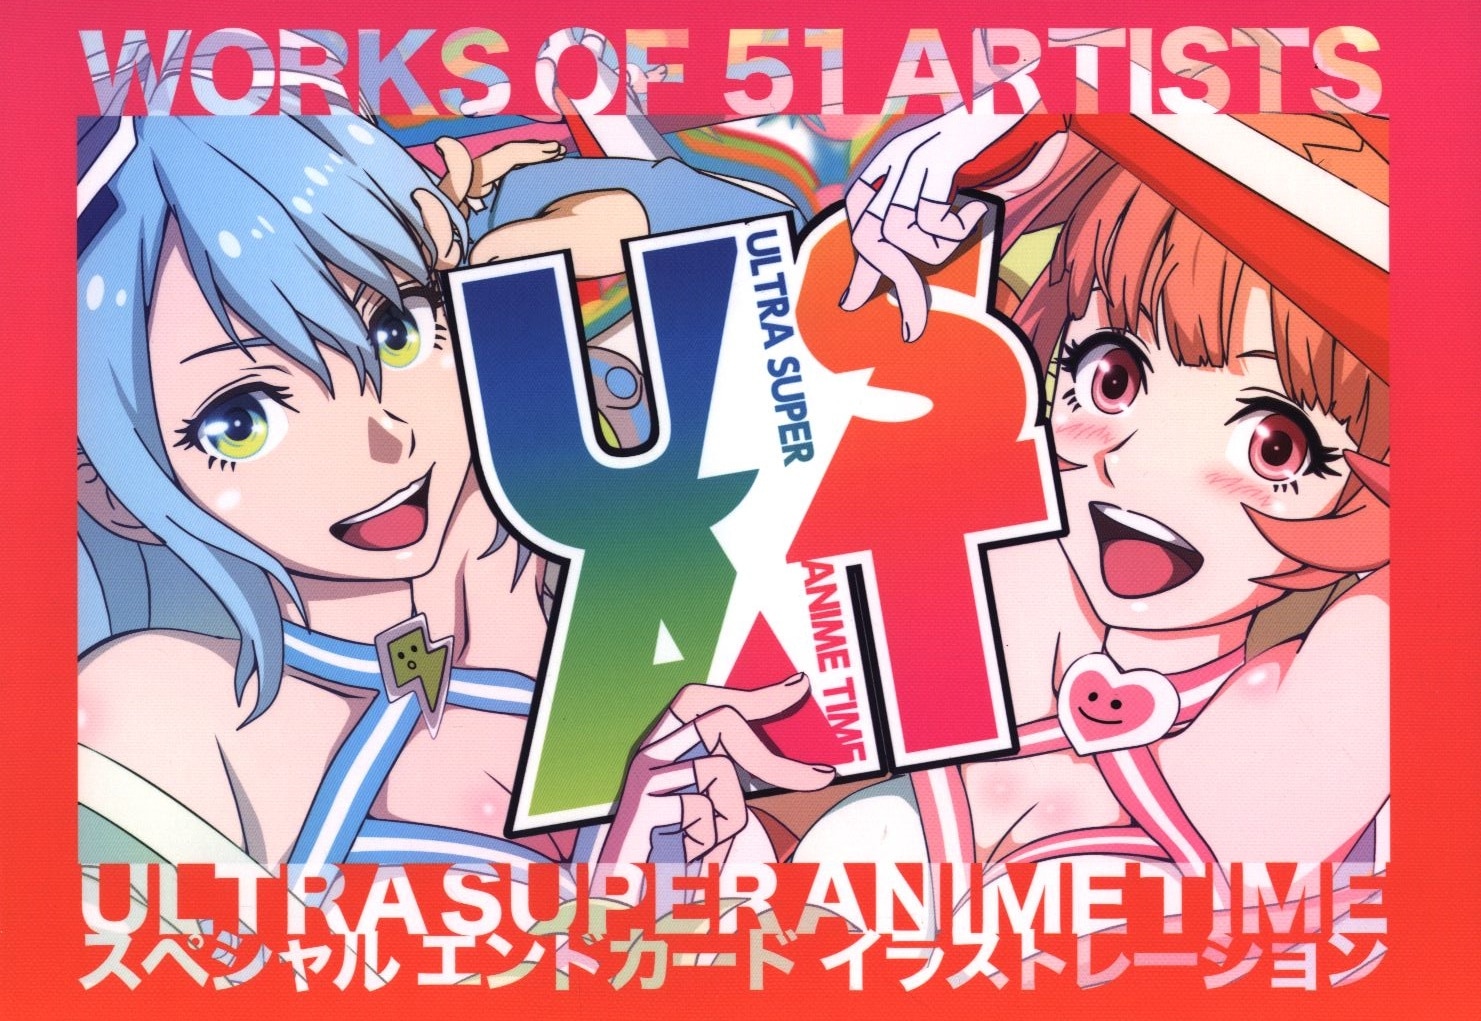 ウルトラスーパーピクチャーズ Works Of 51 Artists Ultra Super Animetime スペシャルエンドカードイラストレーション まんだらけ Mandarake